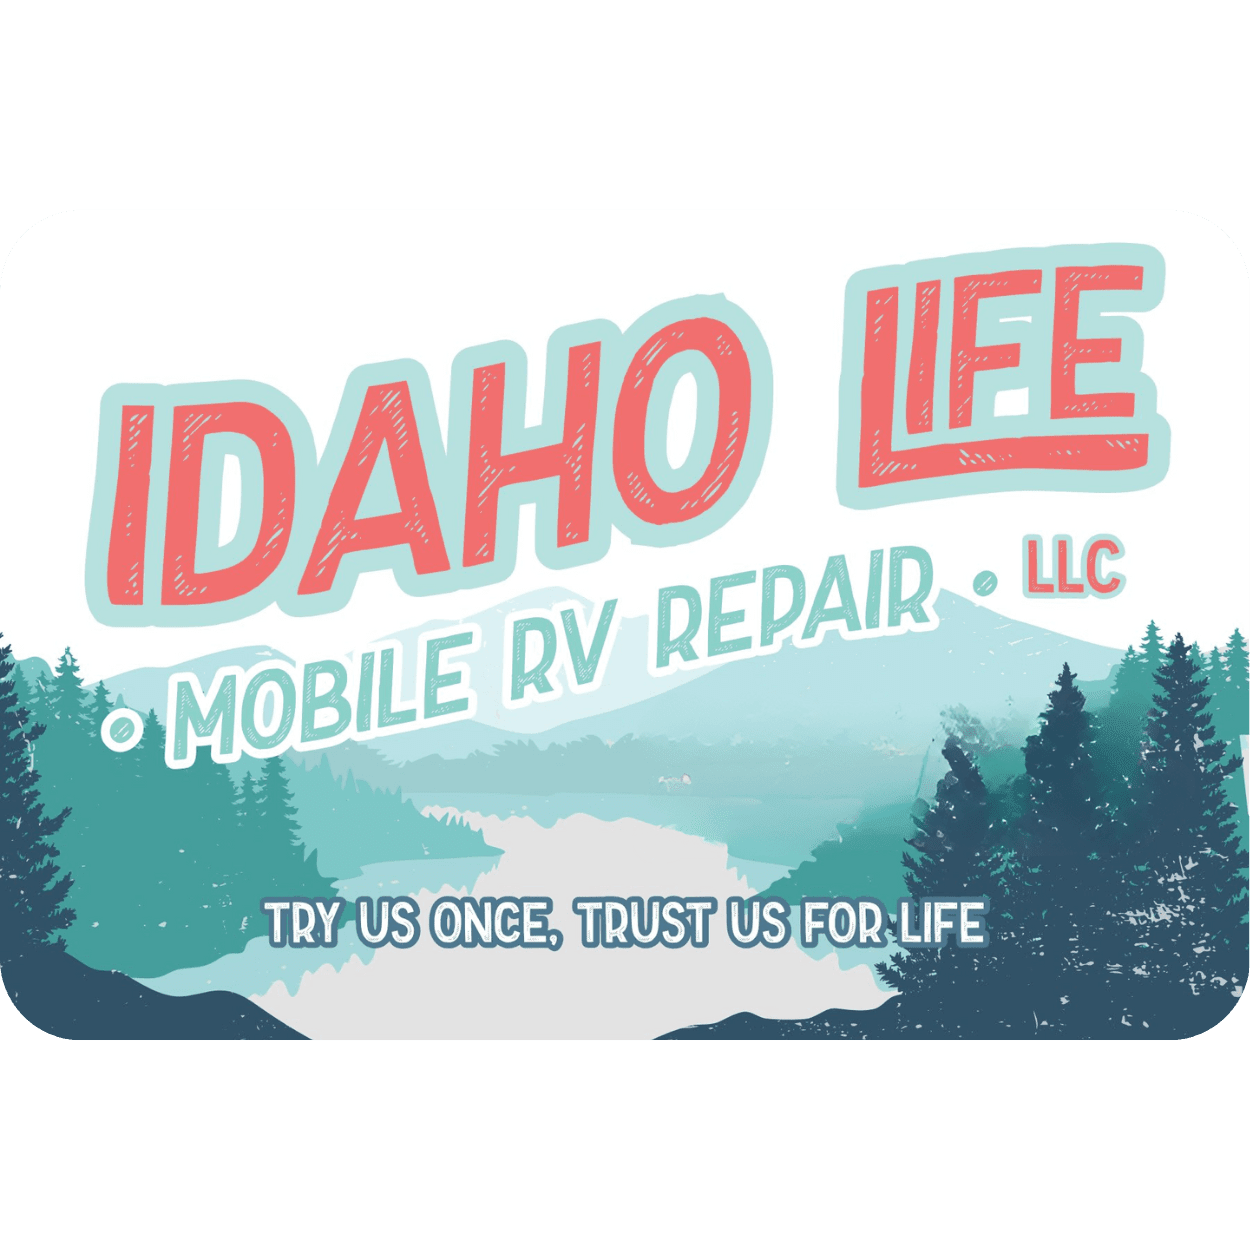 Idaho Life Mobile RV Repair LLC